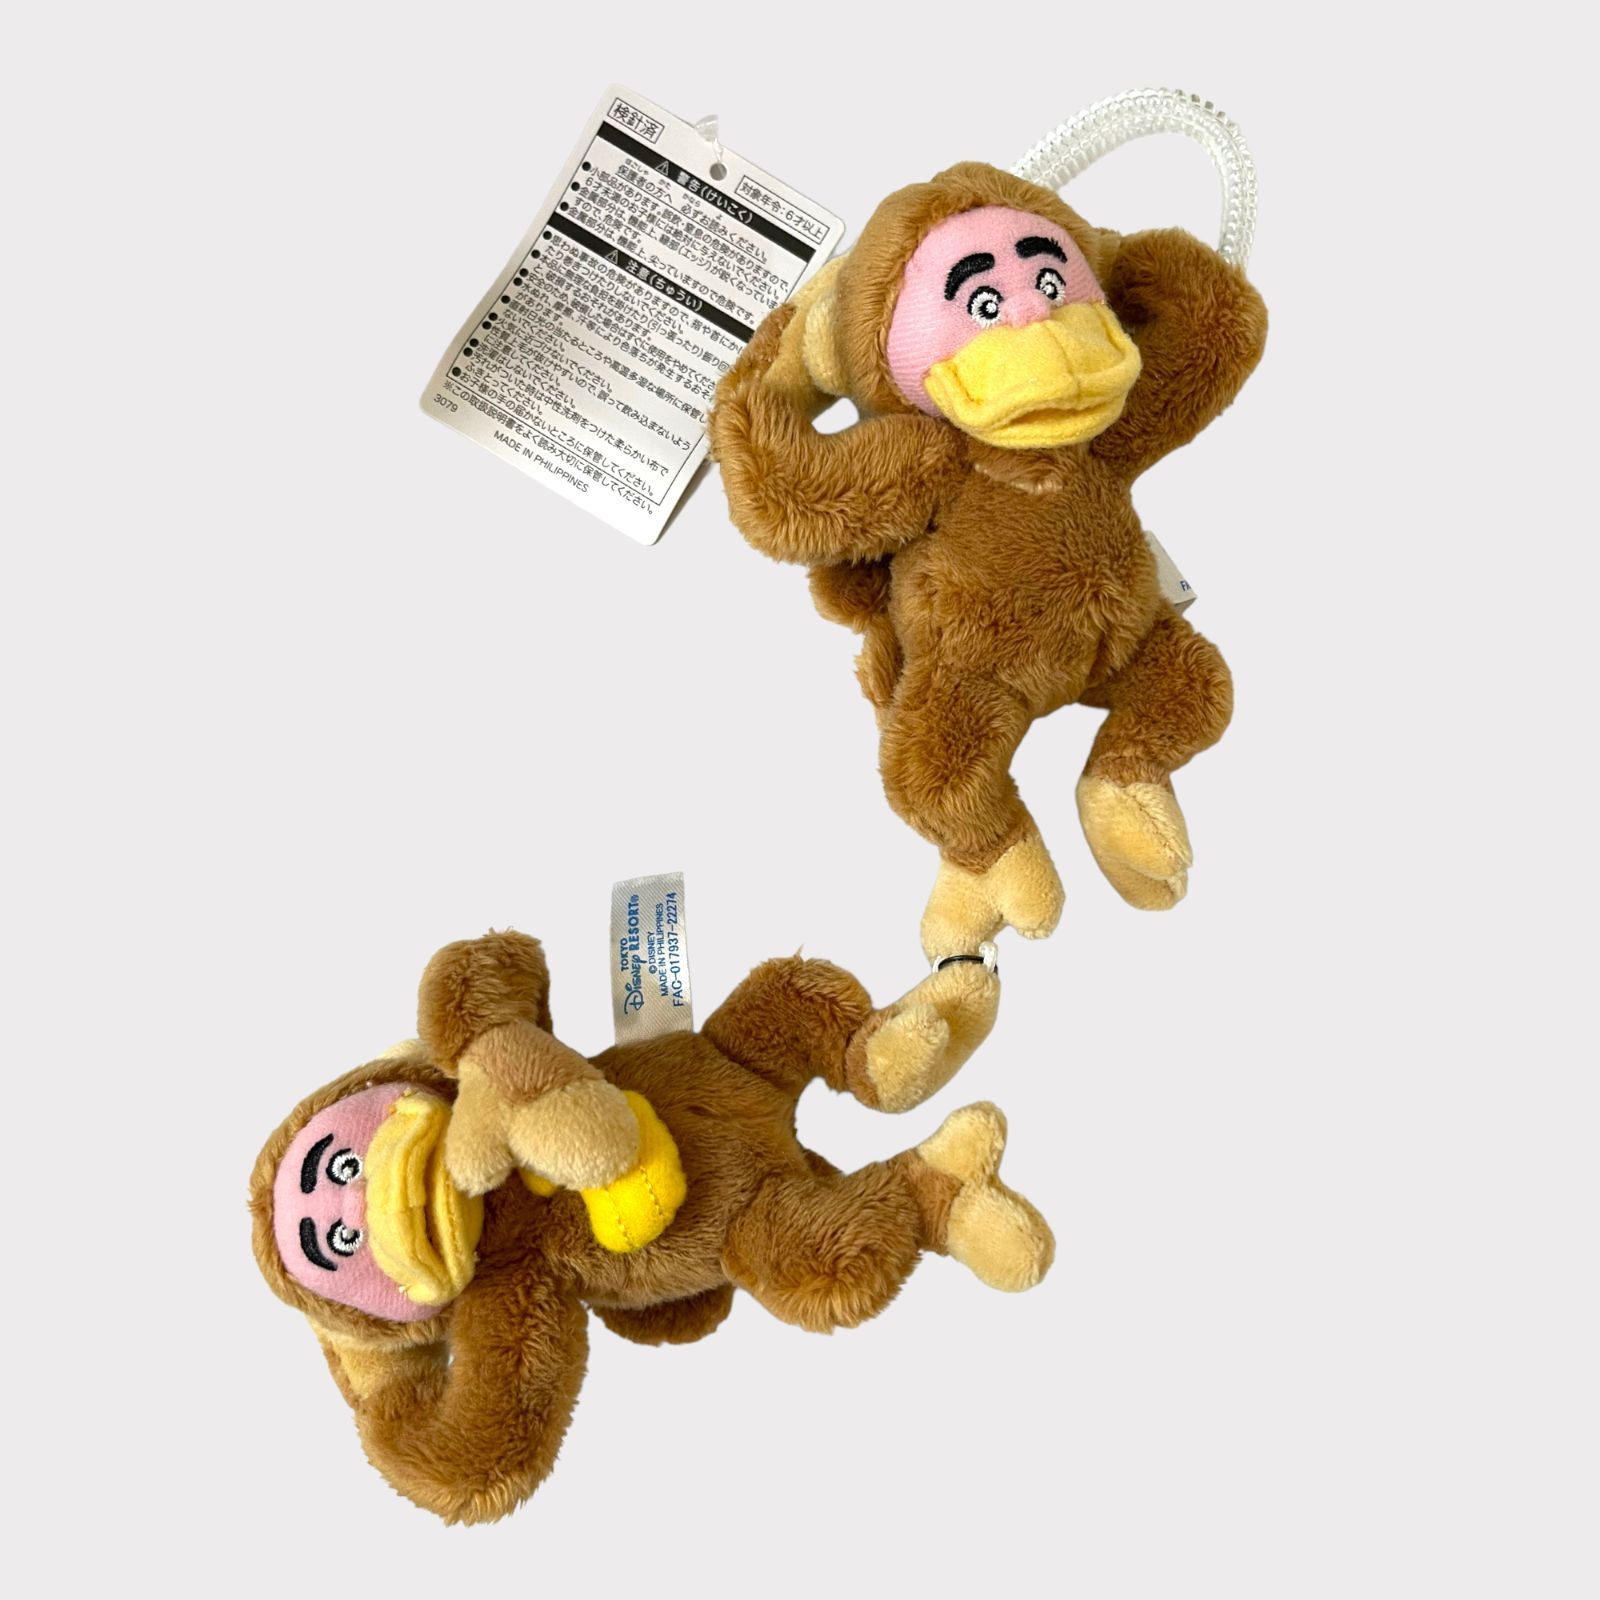 ぬ☆ぬいぐるみ ドイツ ハーマン社 さる猿サル モンキー 小さい18㎝ 赤 